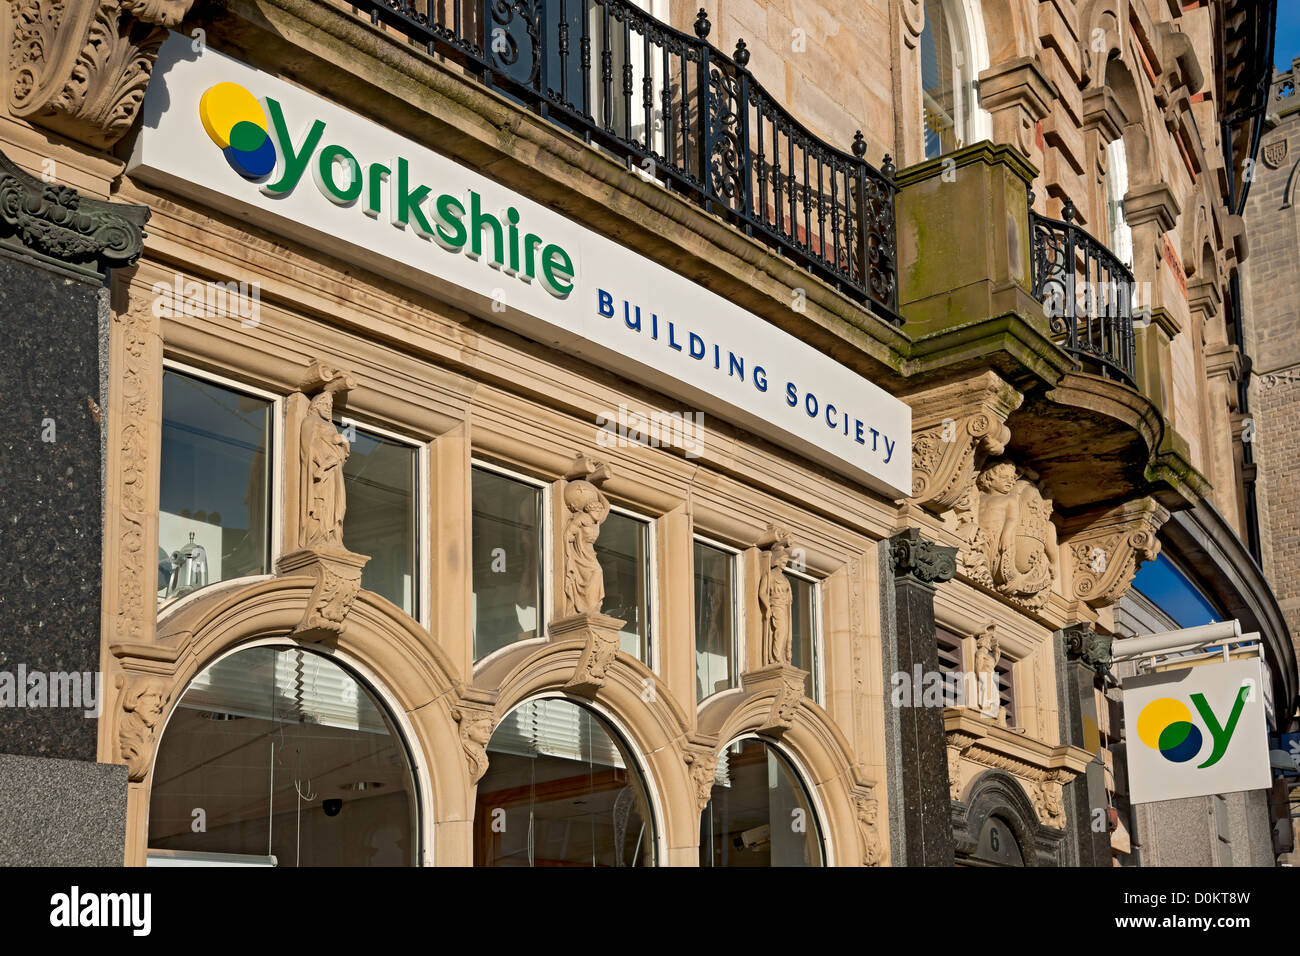 Yorkshire Building Society Bankgebäude und -Zeichen Cambridge Crescent Harrogate North Yorkshire England Großbritannien GB Großbritannien Stockfoto